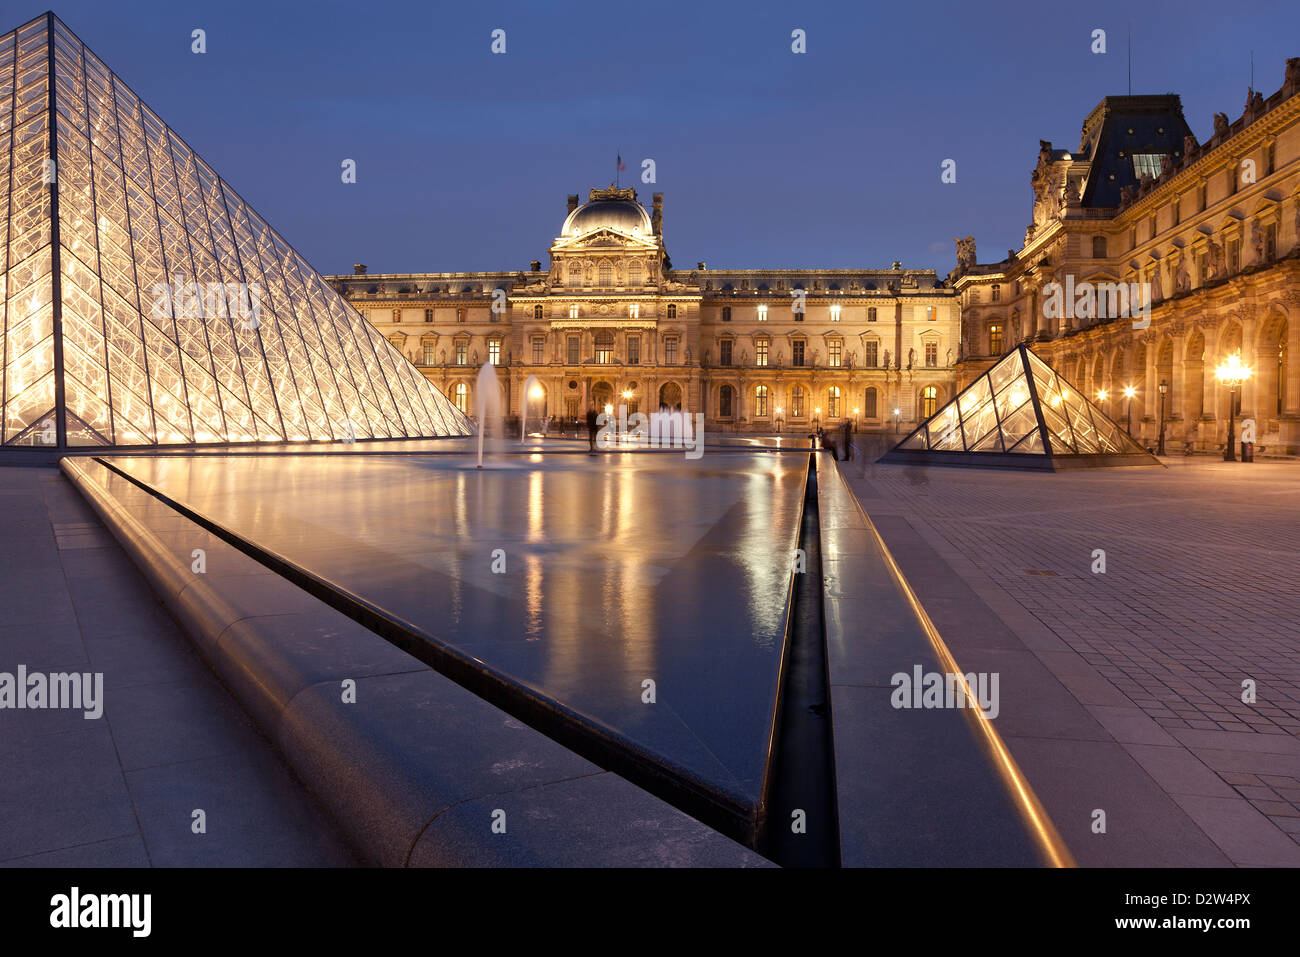 Louvre museum, Paris, Ile de France, France Stock Photo